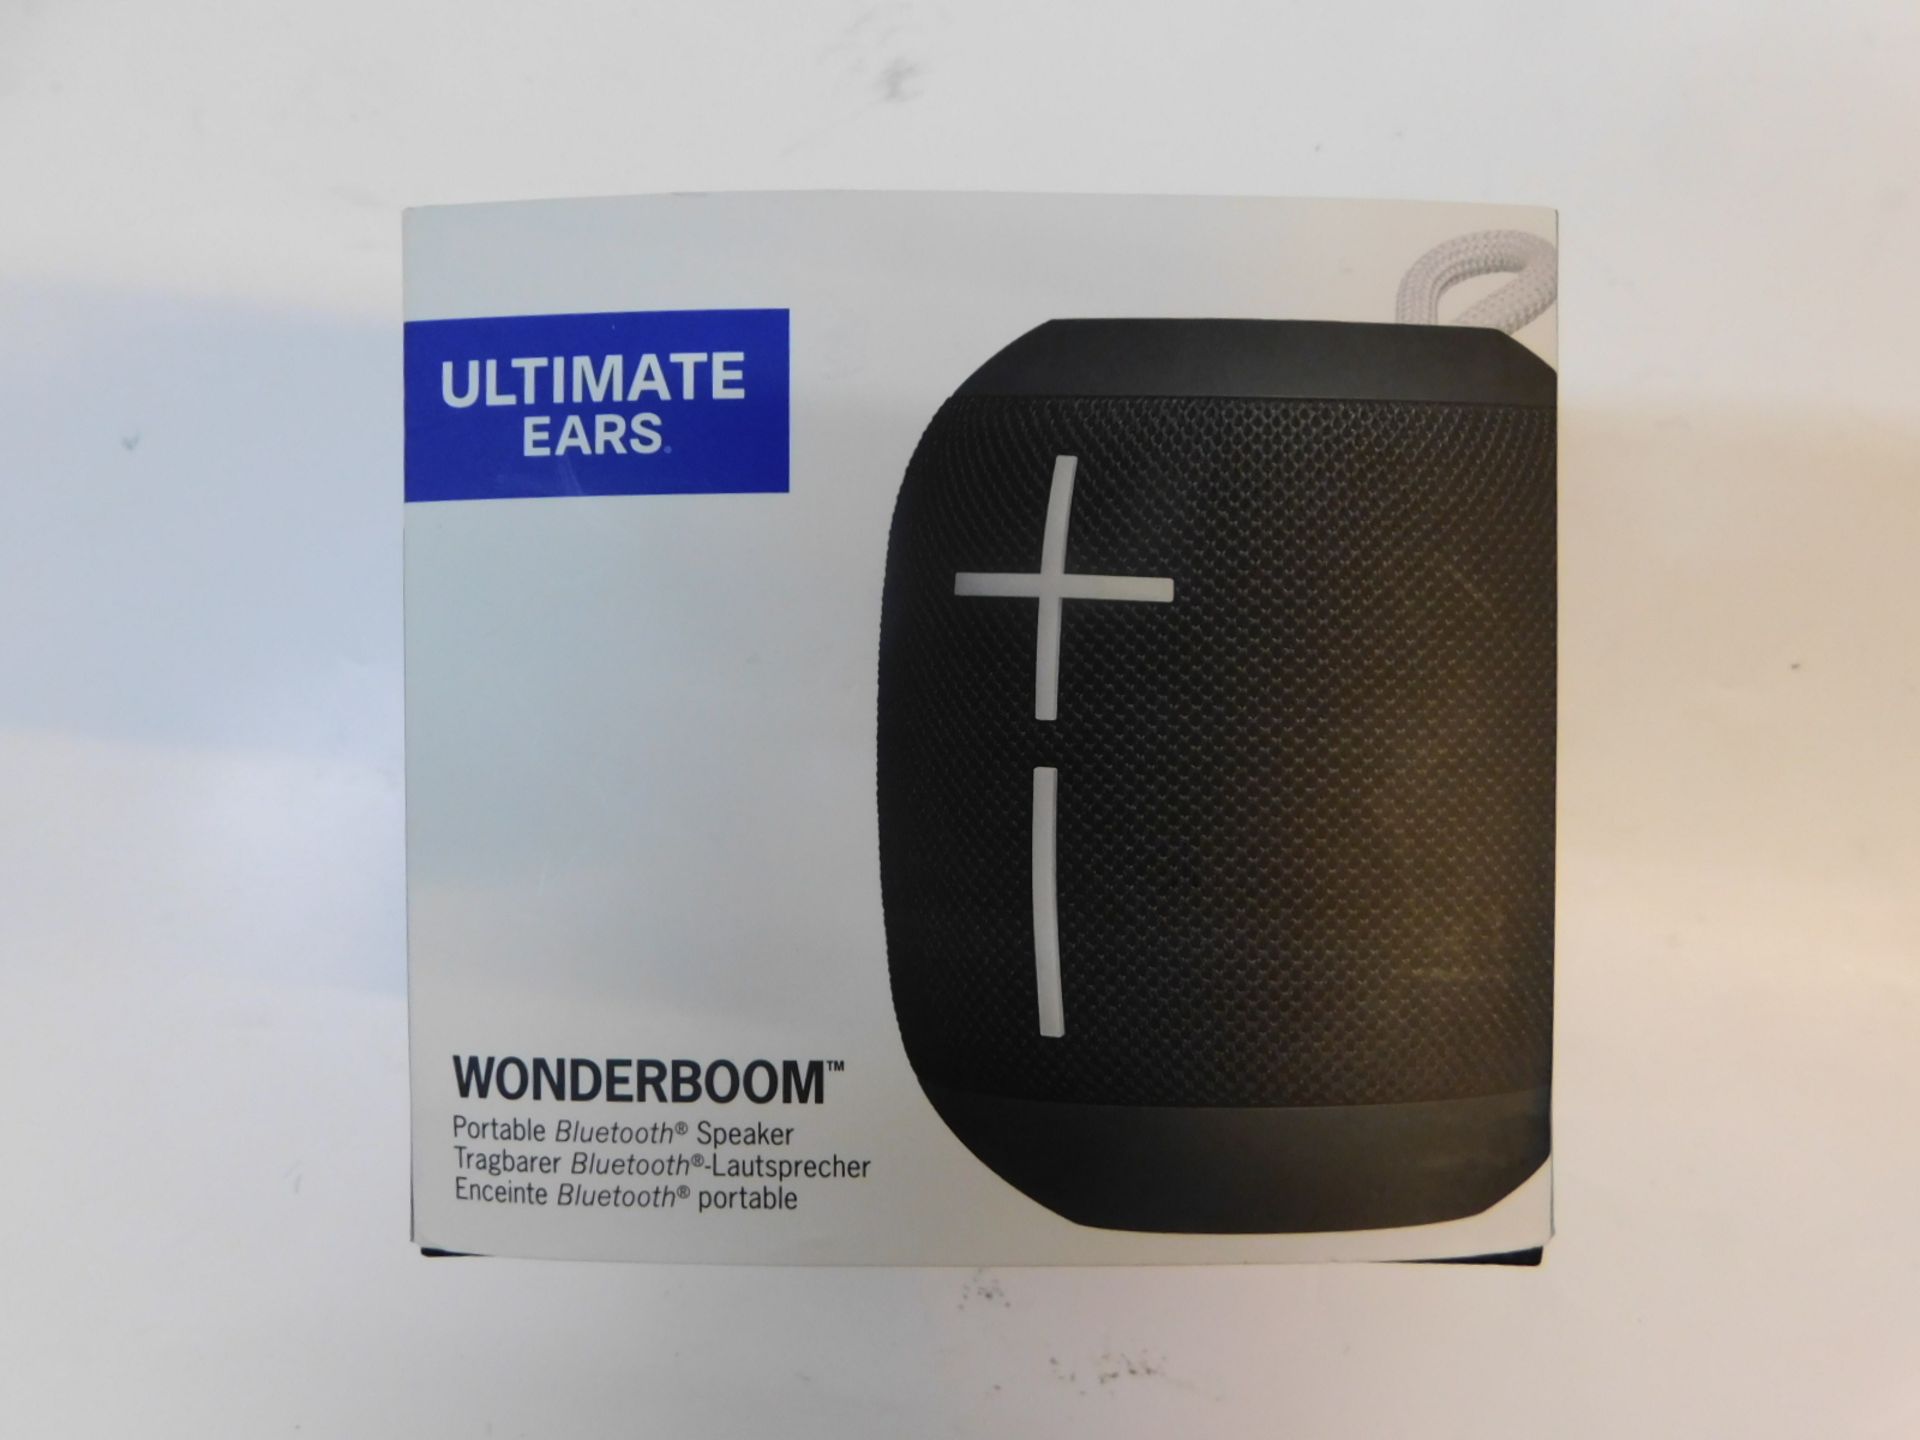 1 BOXED ULTIMATE EARS WONDERBOOM BLACK PORTABLE BLUETOOTH SPEAKER RRP Â£89.99